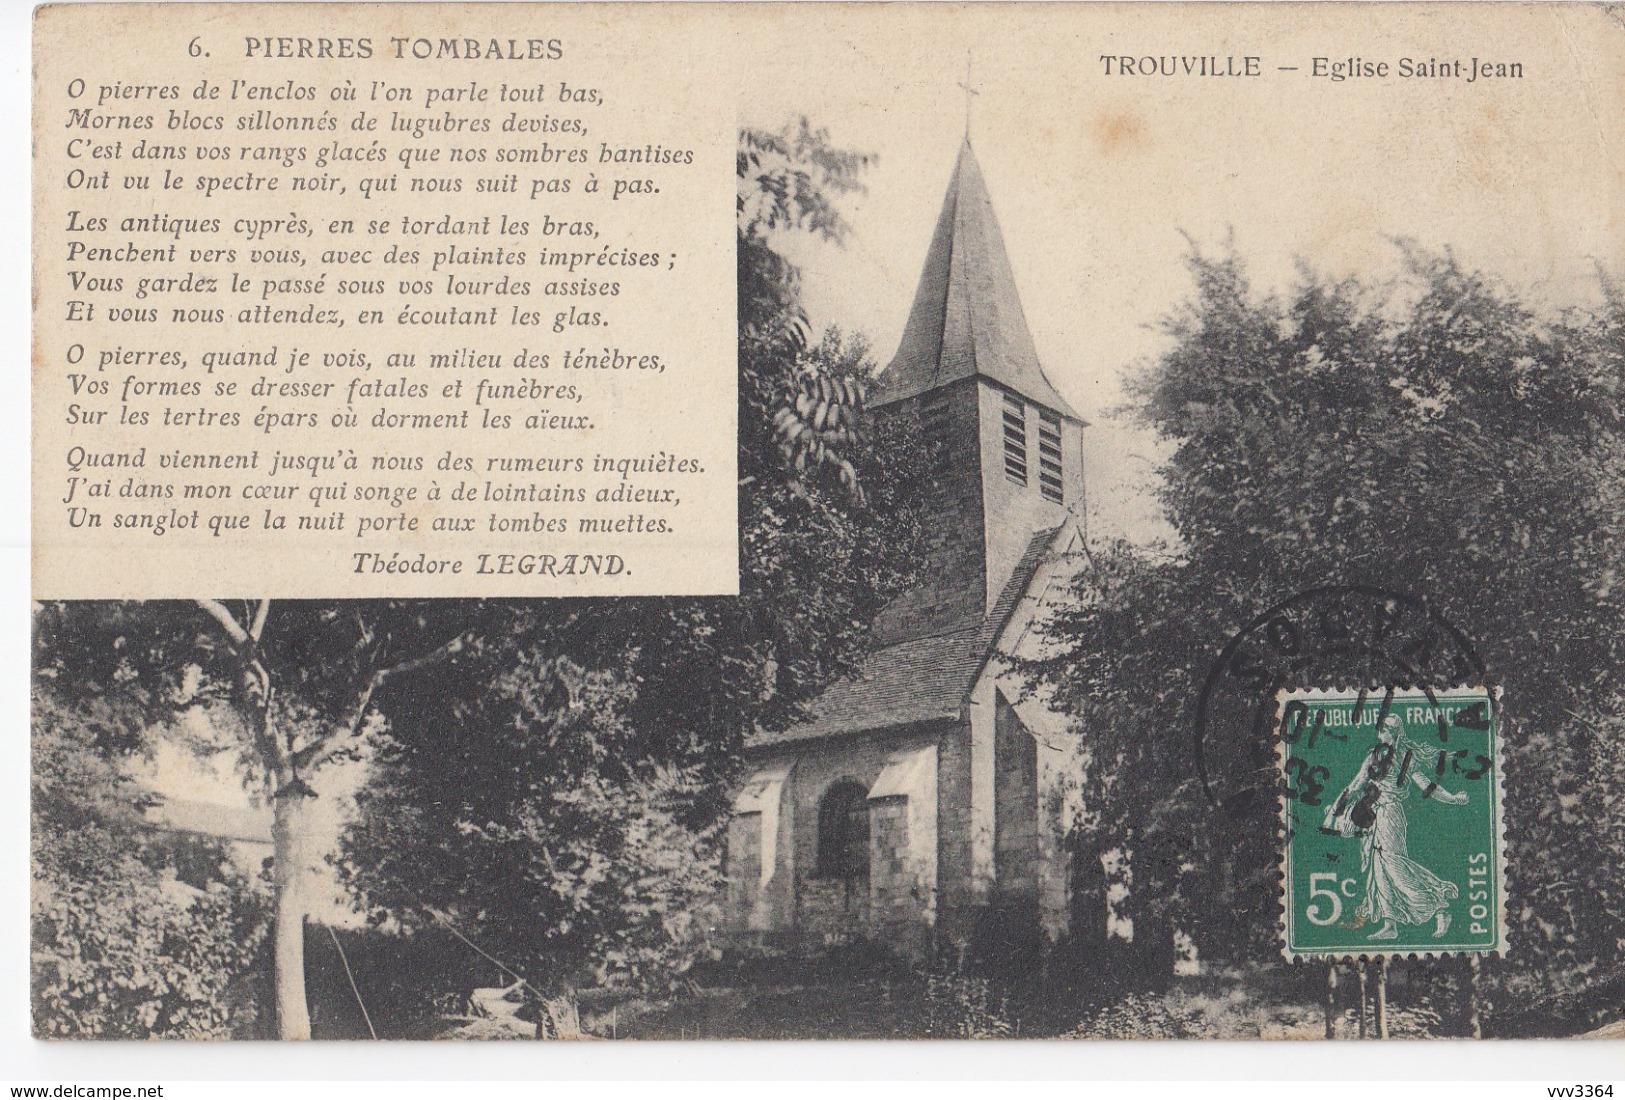 TROUVILLE: Eglise Saint-Jean (Poème De Théodore Legrand) - Trouville